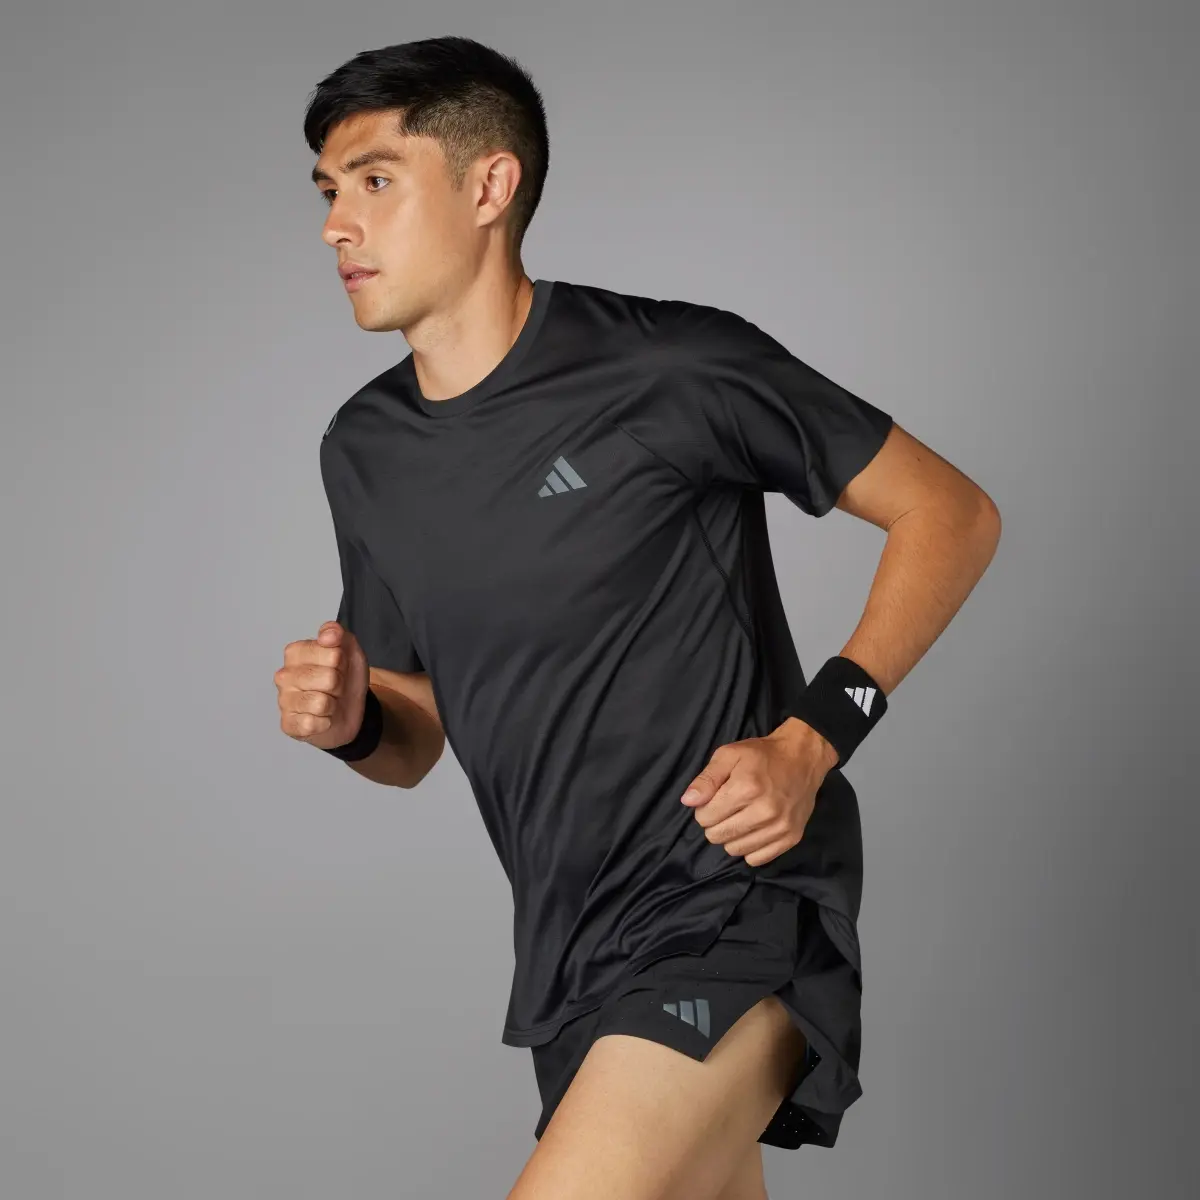 Adidas Adizero Running T-Shirt. 1